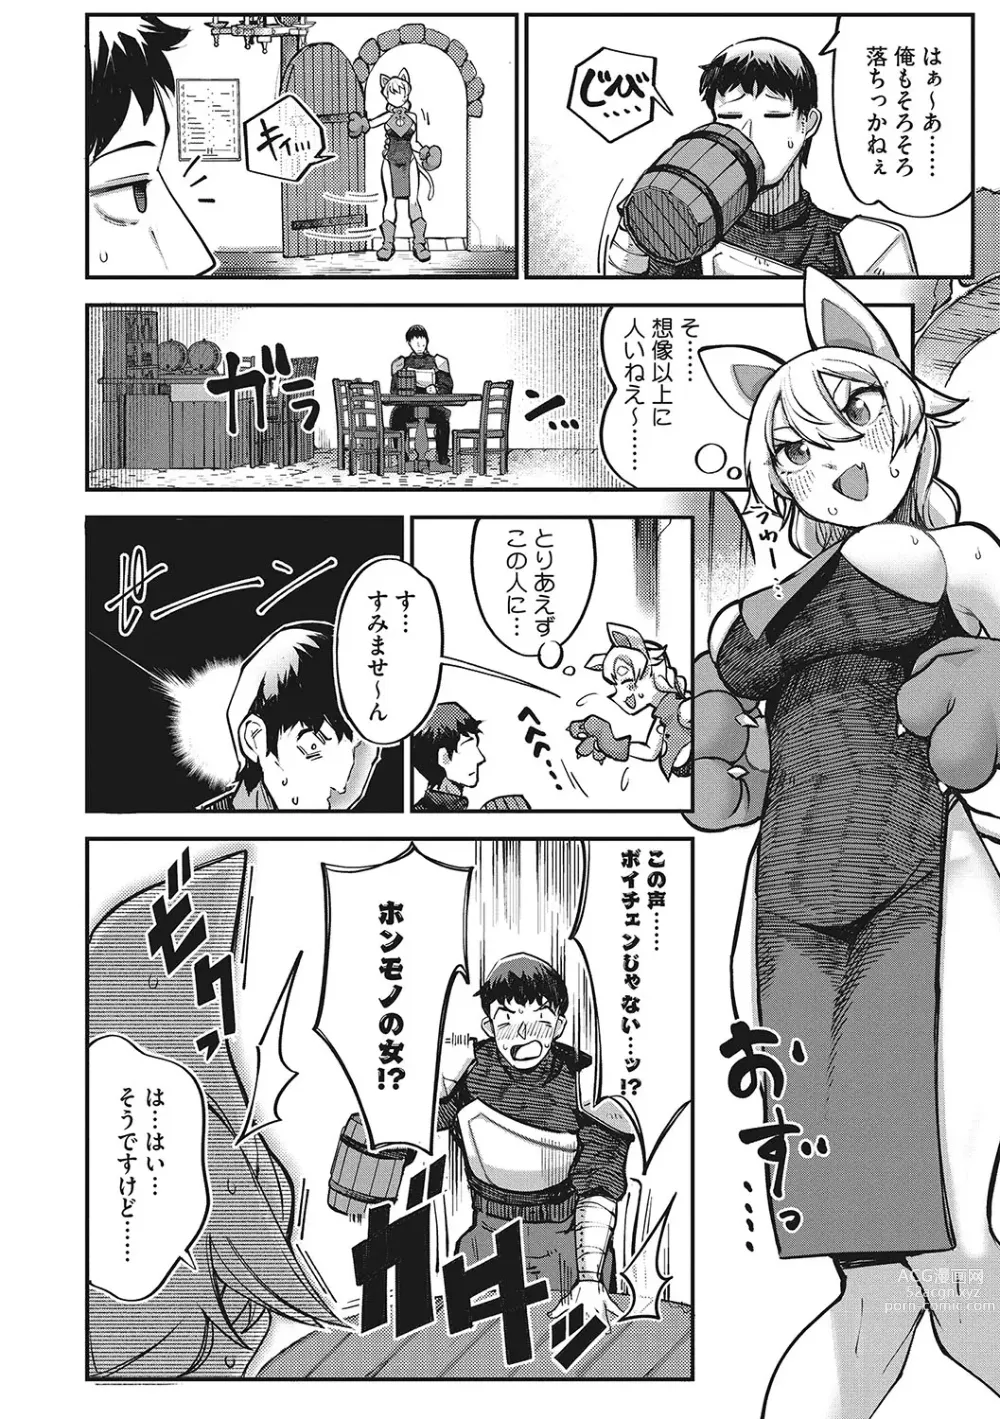 Page 9 of manga Hatsujou Girl ga Arawareta!